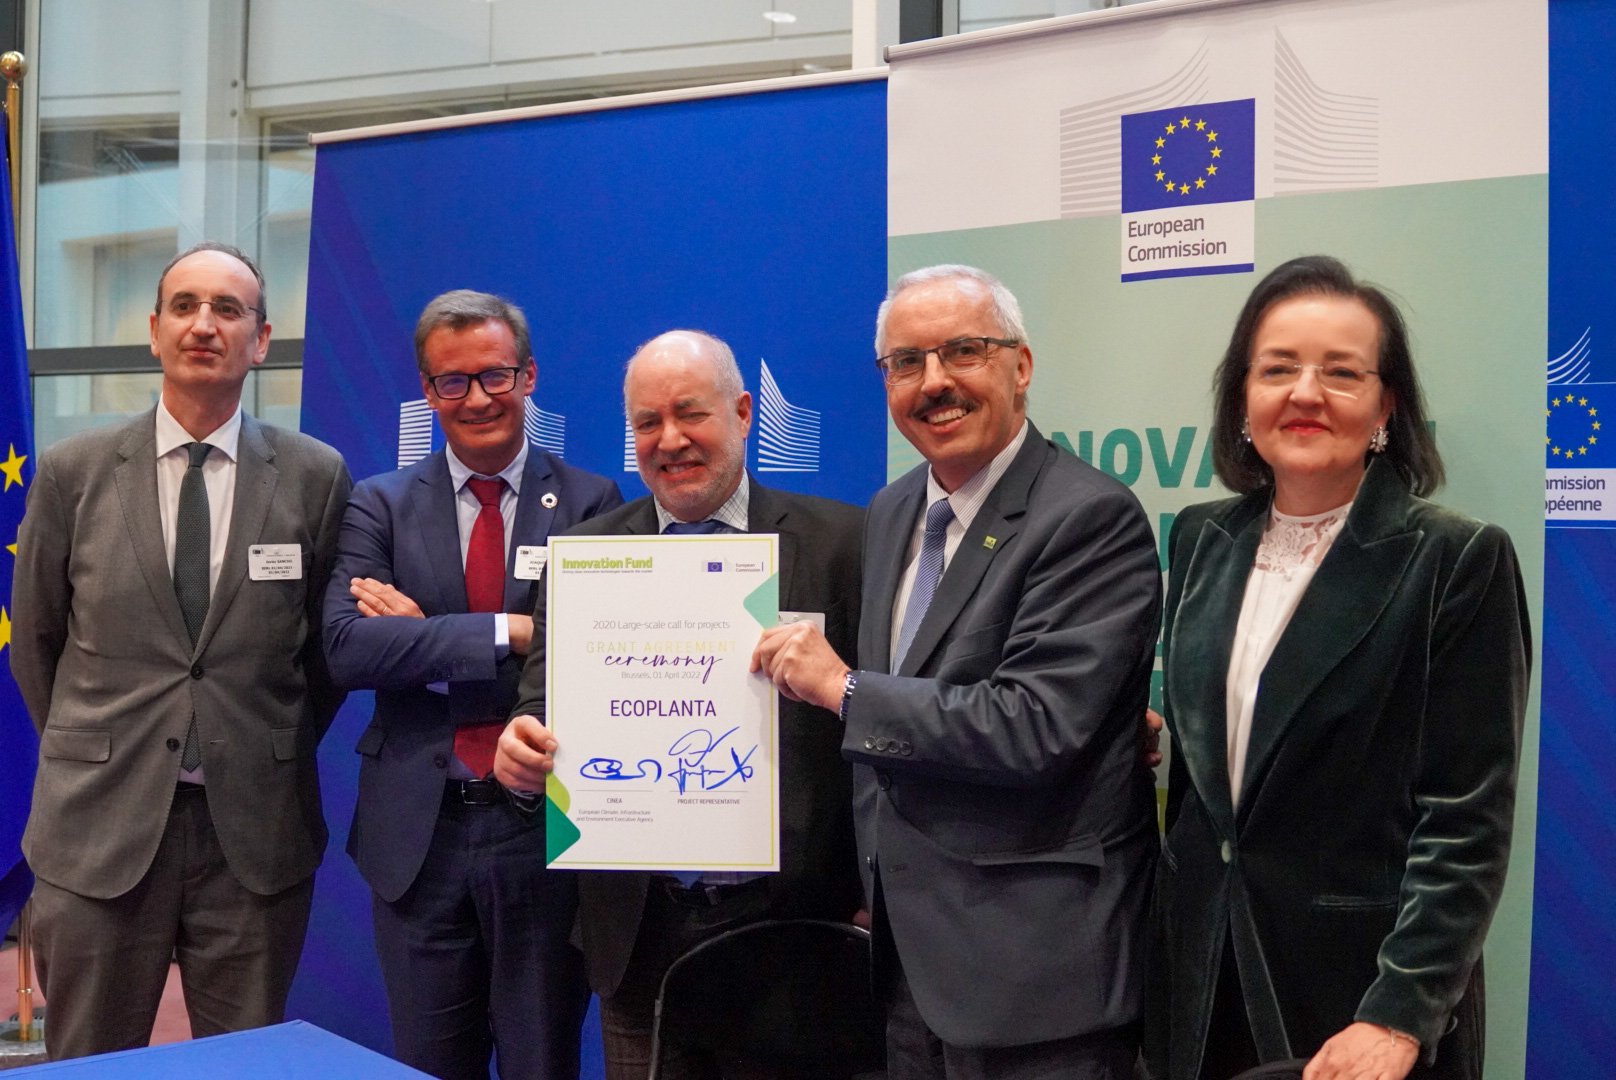 Ecoplanta firma el acuerdo de financiación con la Comisión Europea en el marco del Fondo de Innovación